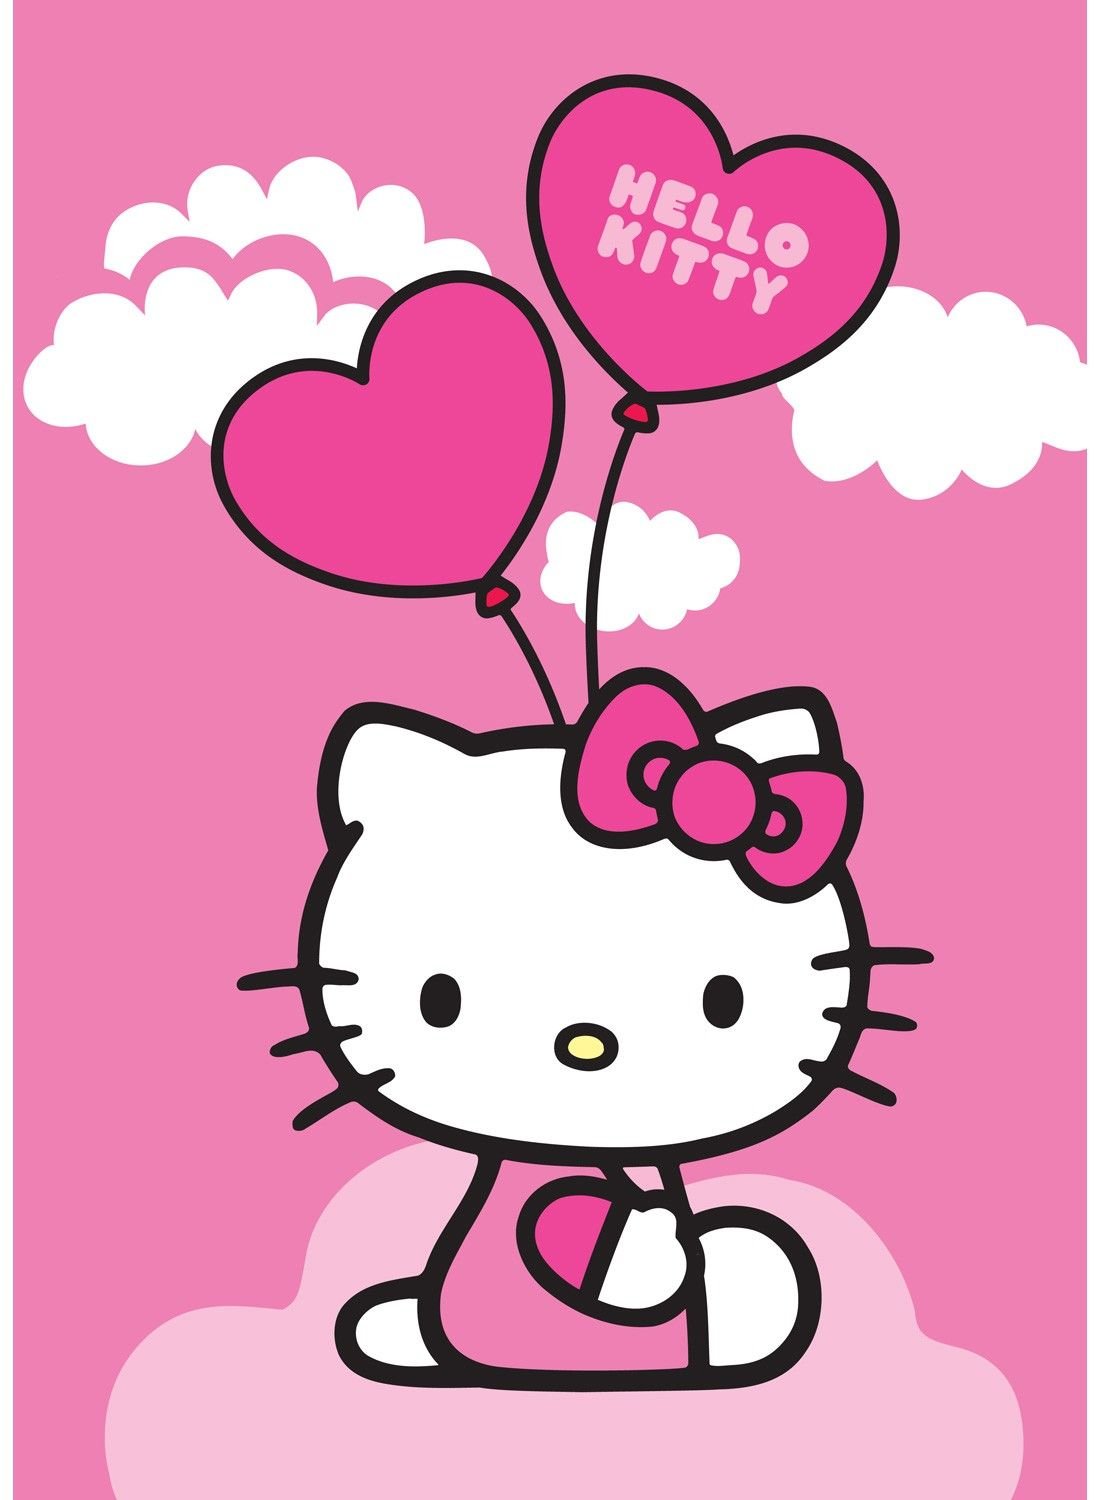 День хелло. Китти. Hello Kitty. Милые открыточки с Хеллоу Китти. Открытка в стиле Хеллоу Китти.